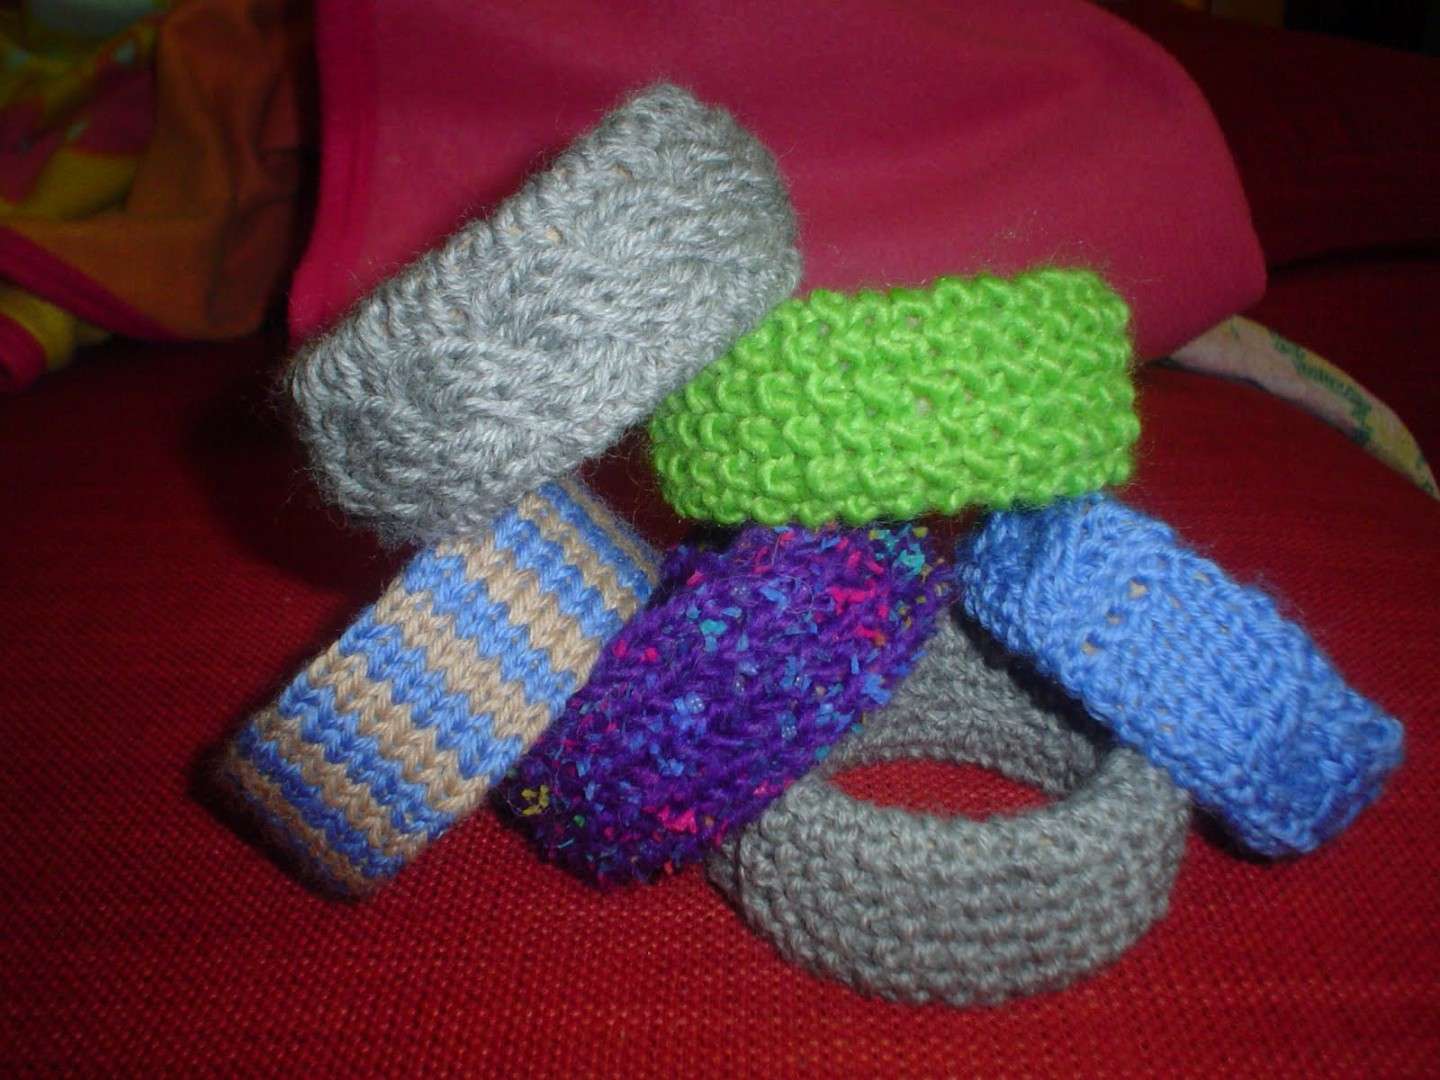 Regali di Natale fai te last minute a maglia: bracciali di lana colorati